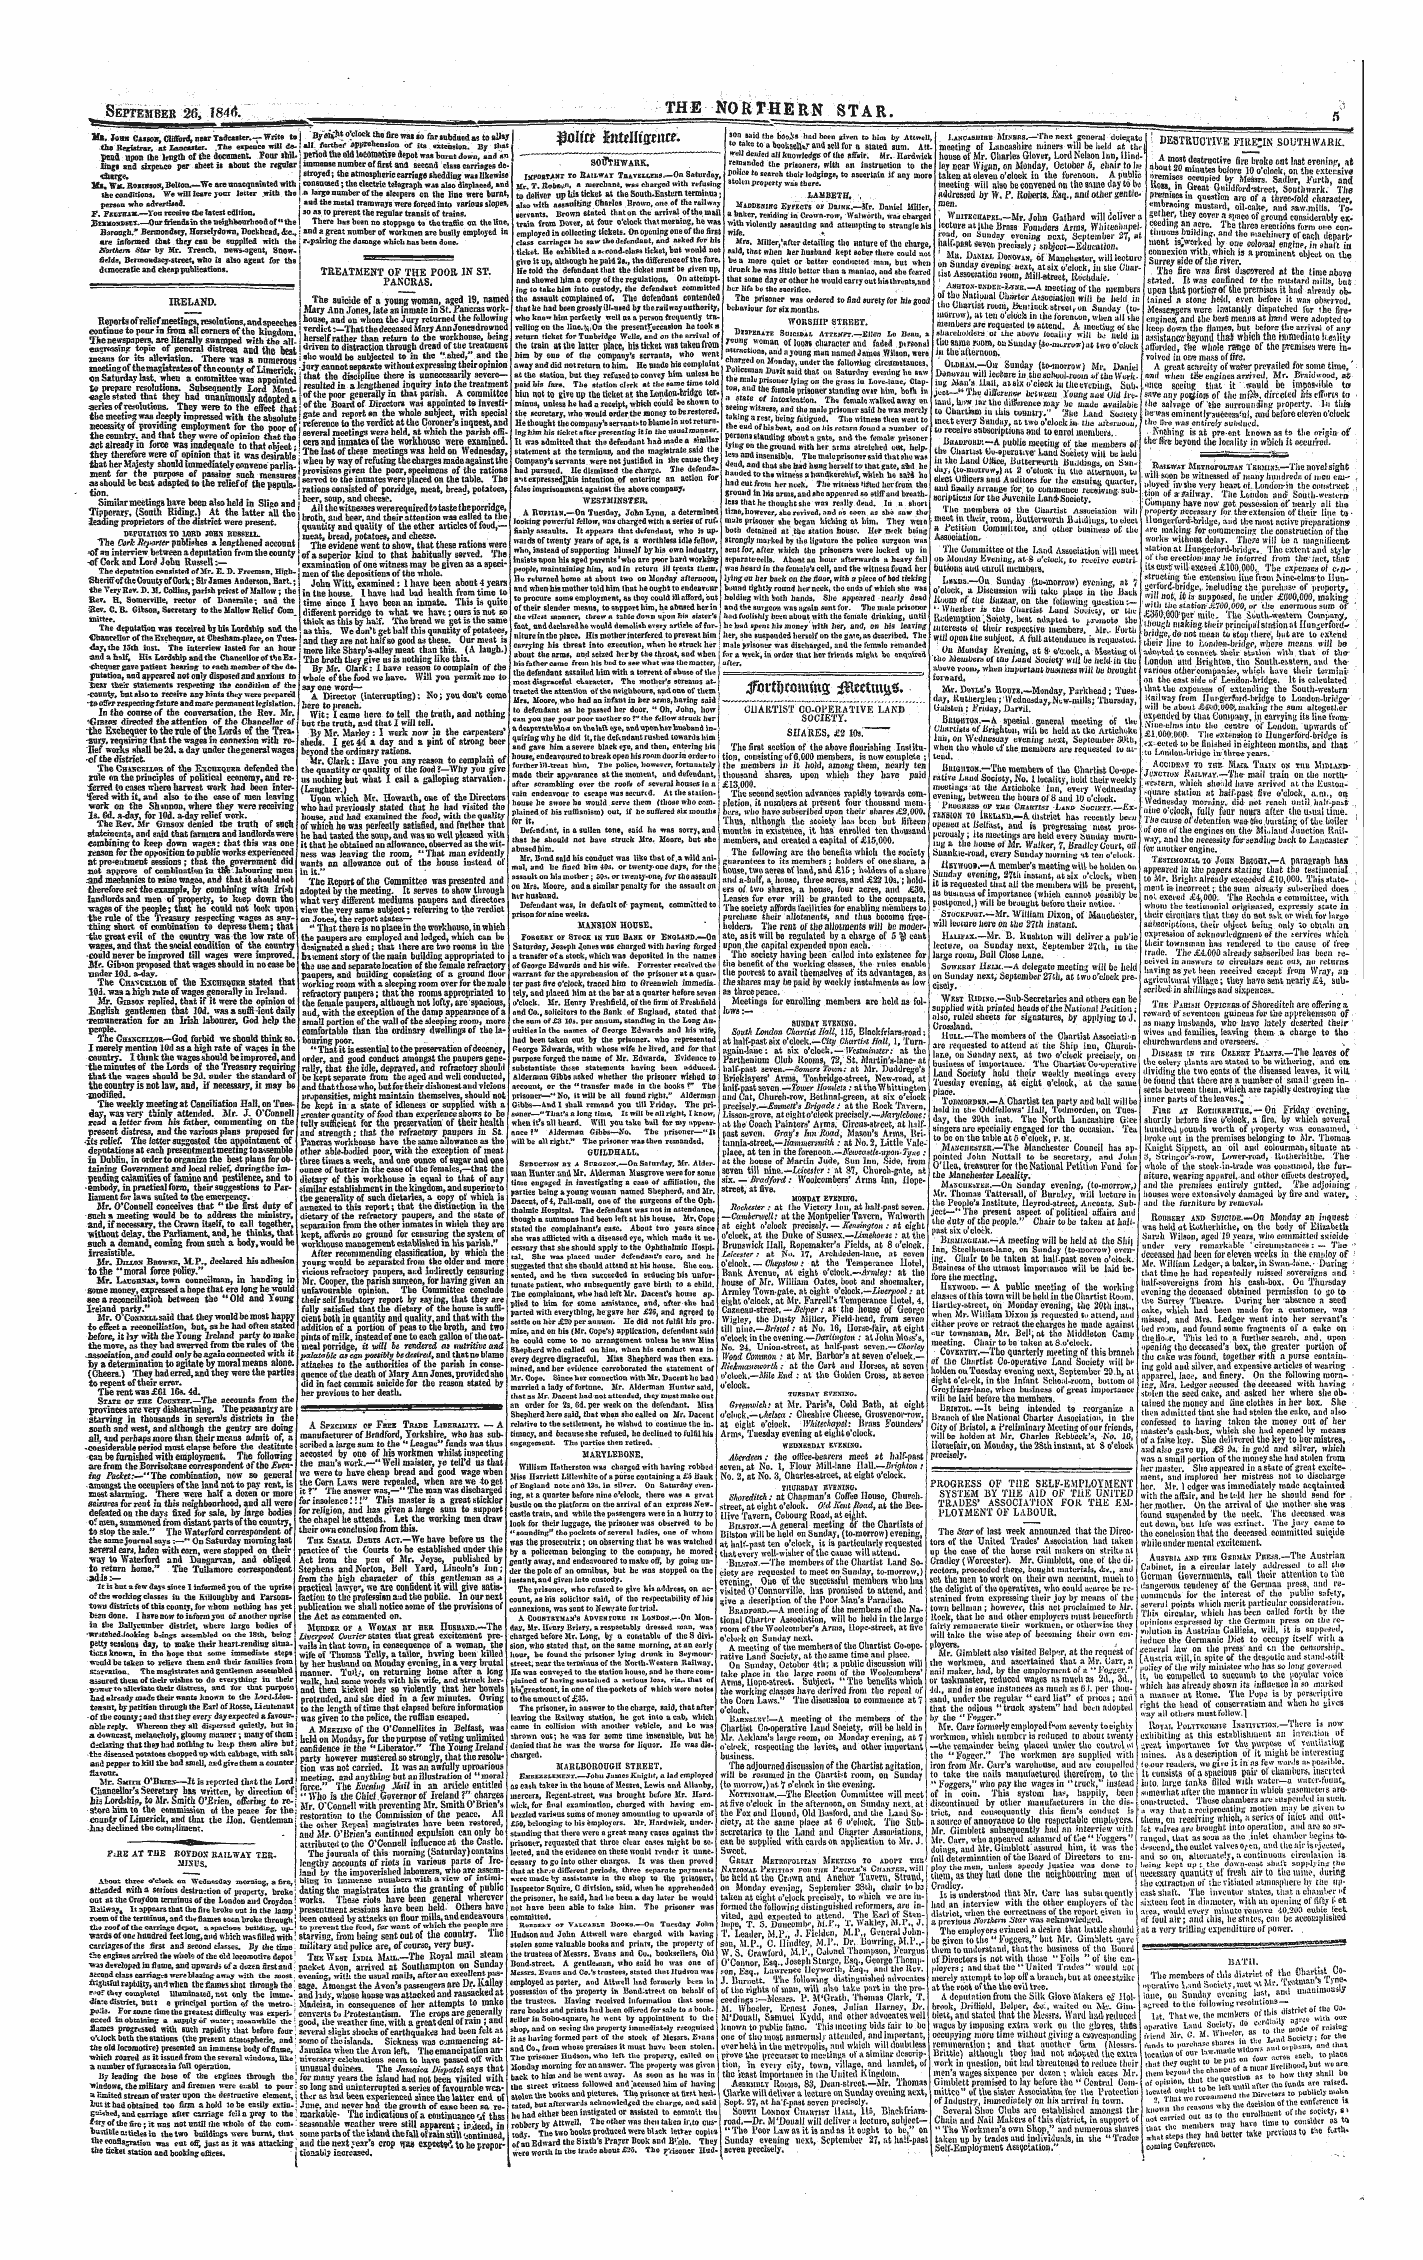 Northern Star (1837-1852): jS F Y, 1st edition - Bath.